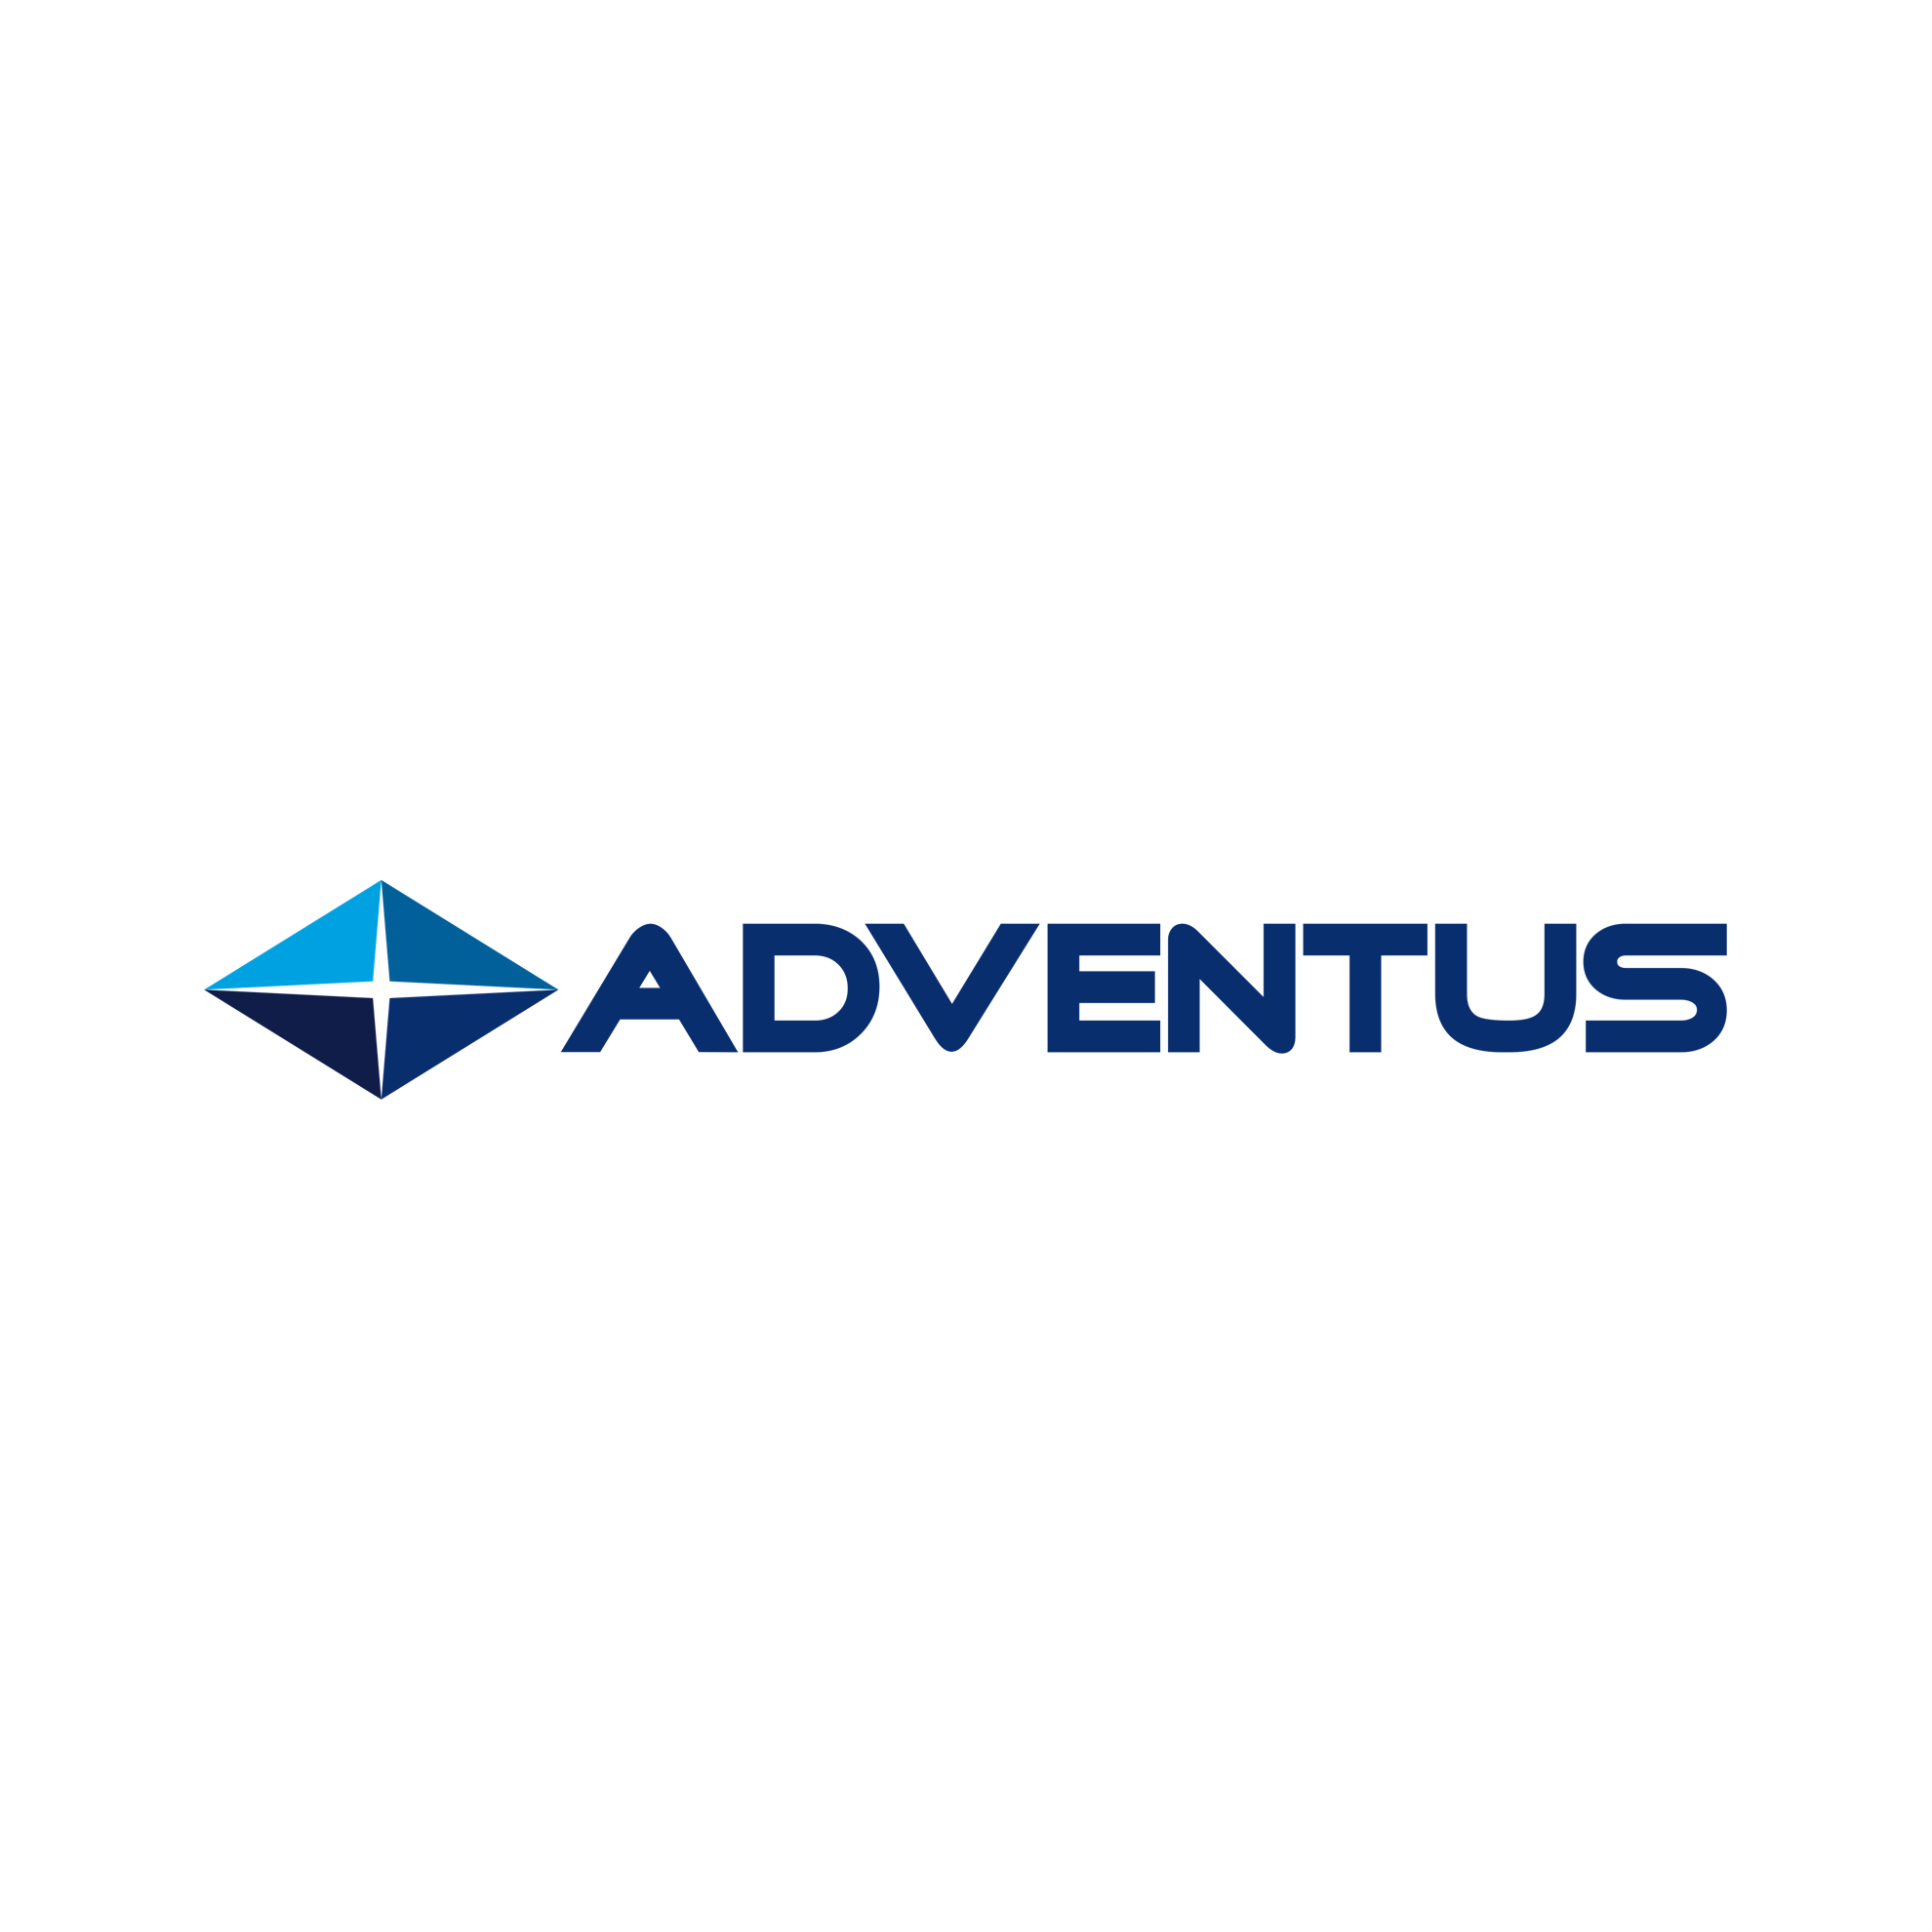 Adventus Pte Ltd in Elioplus